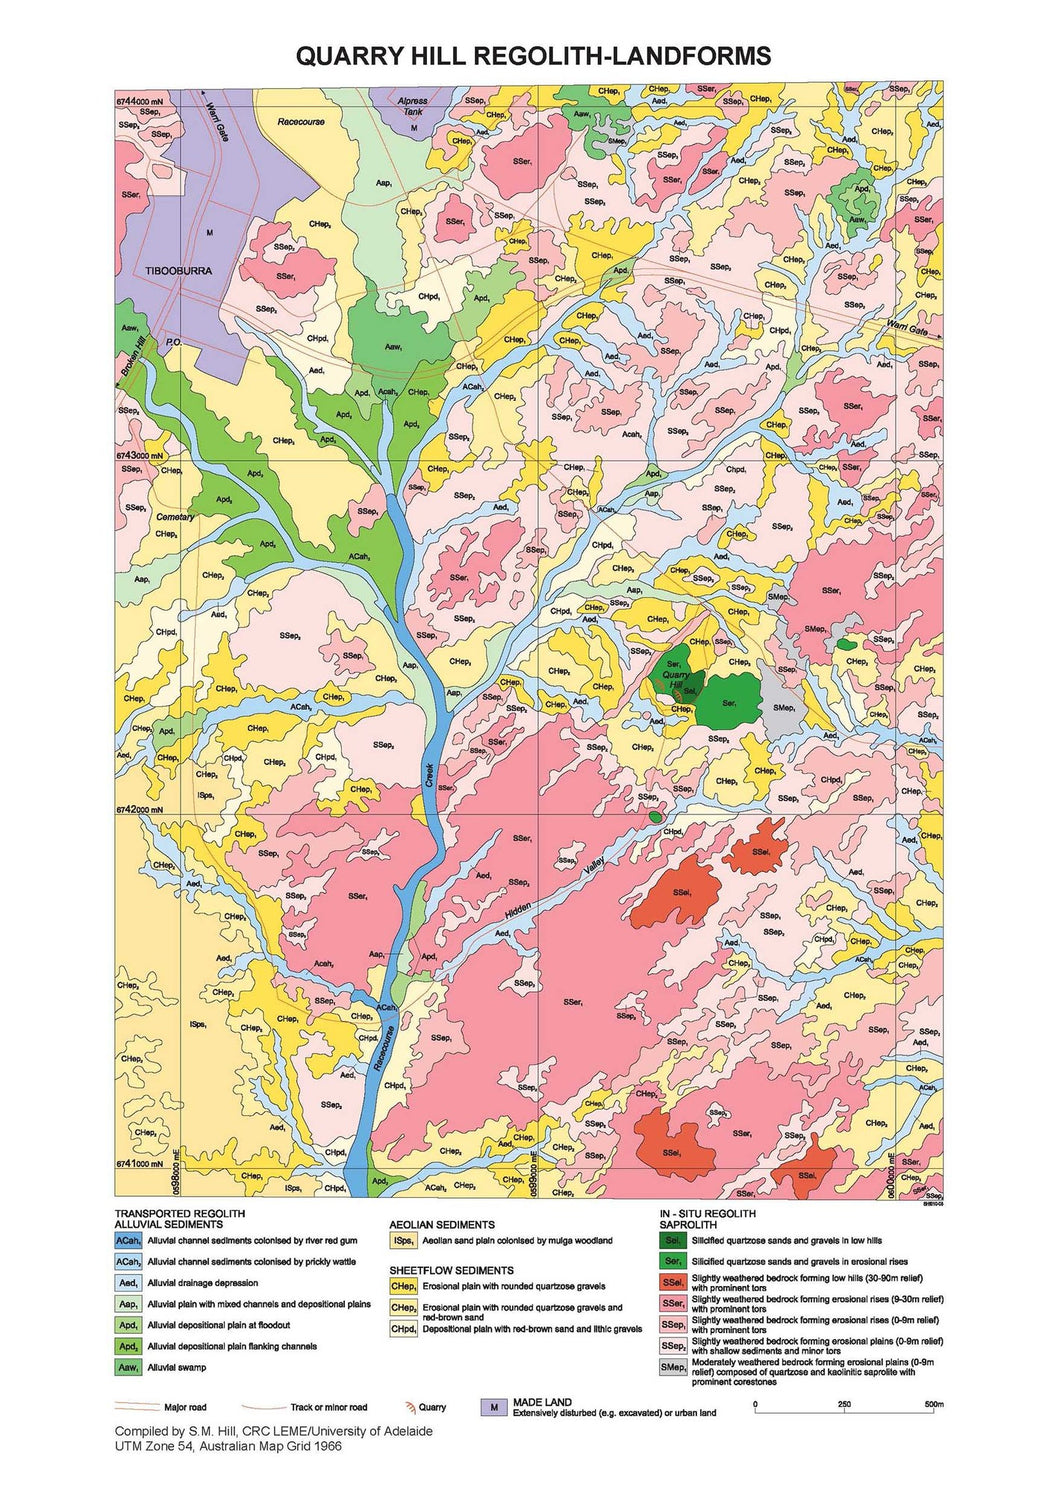 Image of Quarry Hill 1:5000 Regolith Landform map